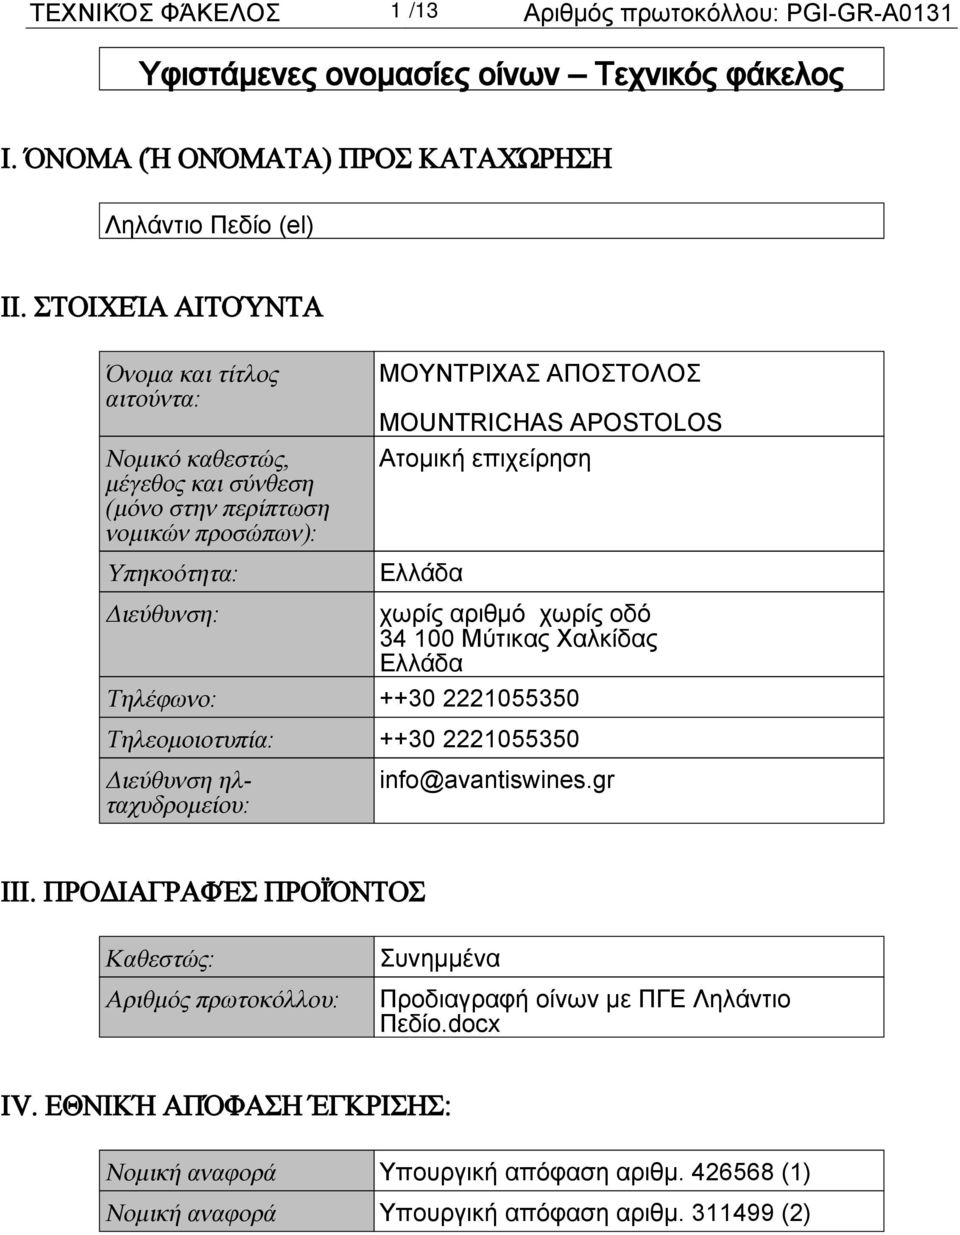 επιχείρηση Ελλάδα Διεύθυνση: χωρίς αριθμό χωρίς οδό 34 100 Μύτικας Χαλκίδας Ελλάδα Τηλέφωνο: ++30 2221055350 Τηλεομοιοτυπία: ++30 2221055350 Διεύθυνση ηλταχυδρομείου: info@avantiswines.gr III.